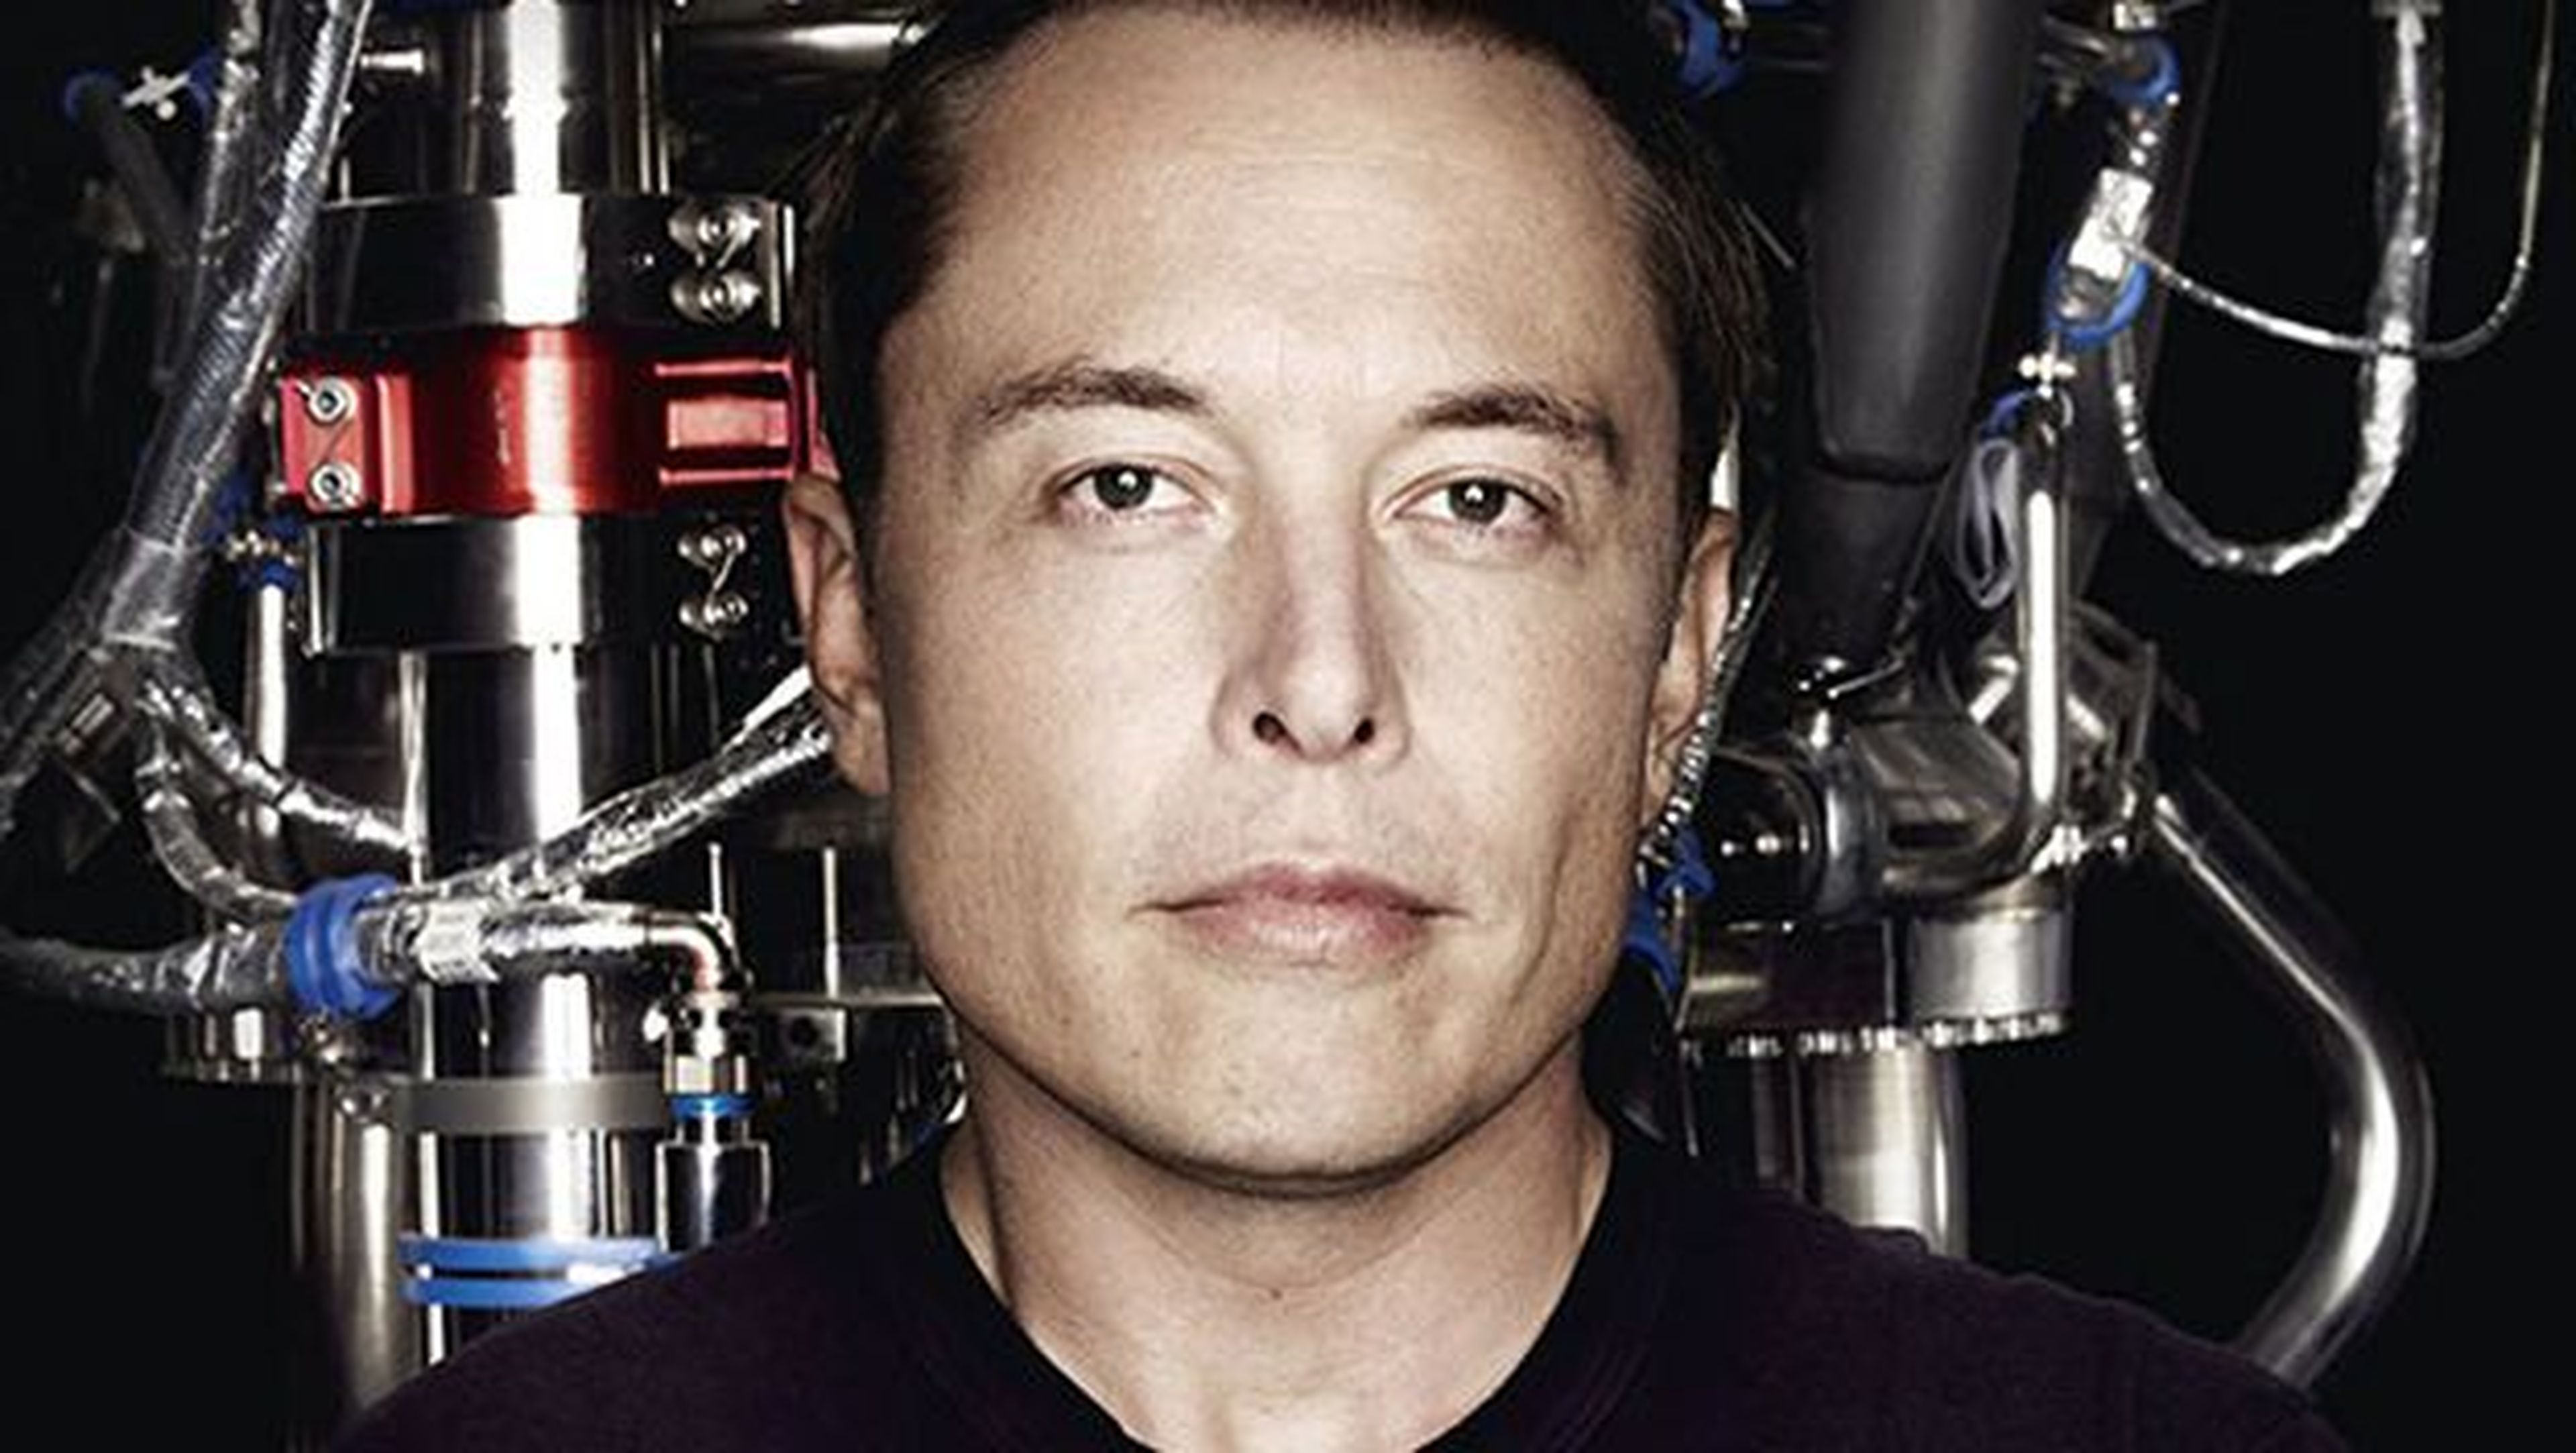 El fin de la humanidad será por culpa de IA dijo Elon Musk